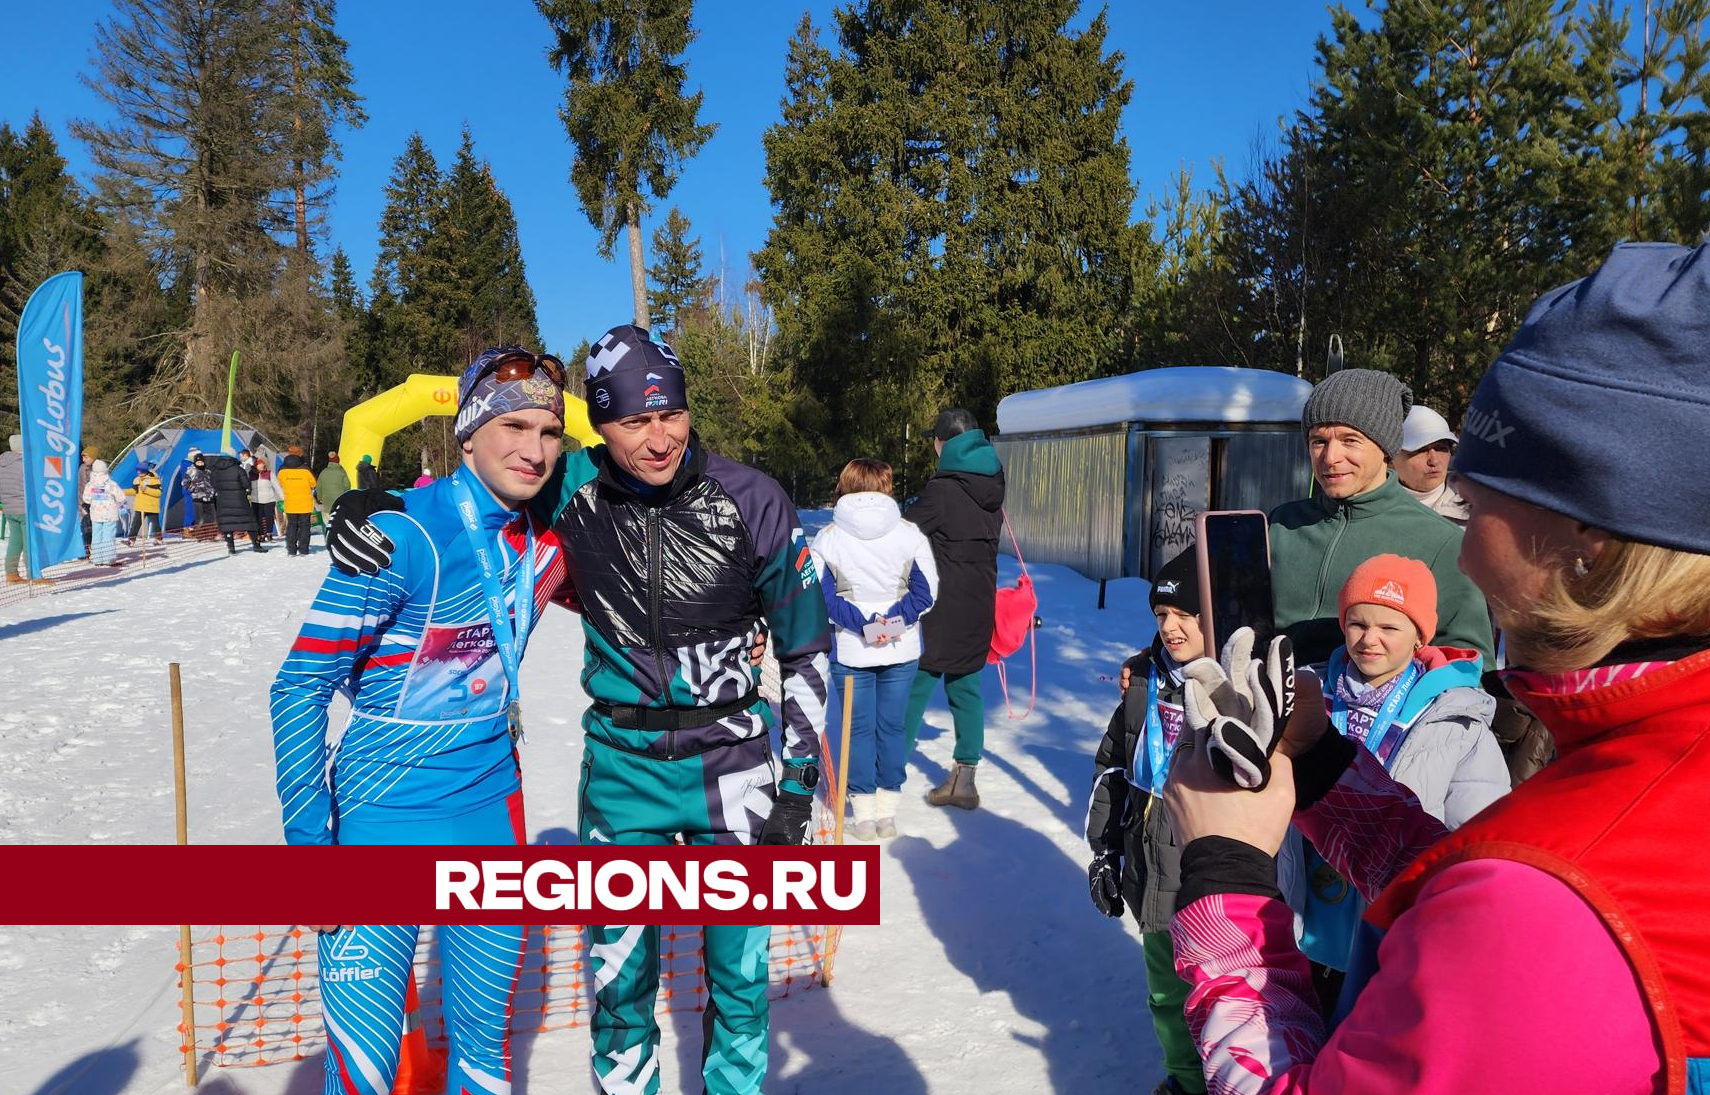 В Красноармейске чемпион Игр-2014 Легков пробежал на лыжах вместе с юными спортсменами